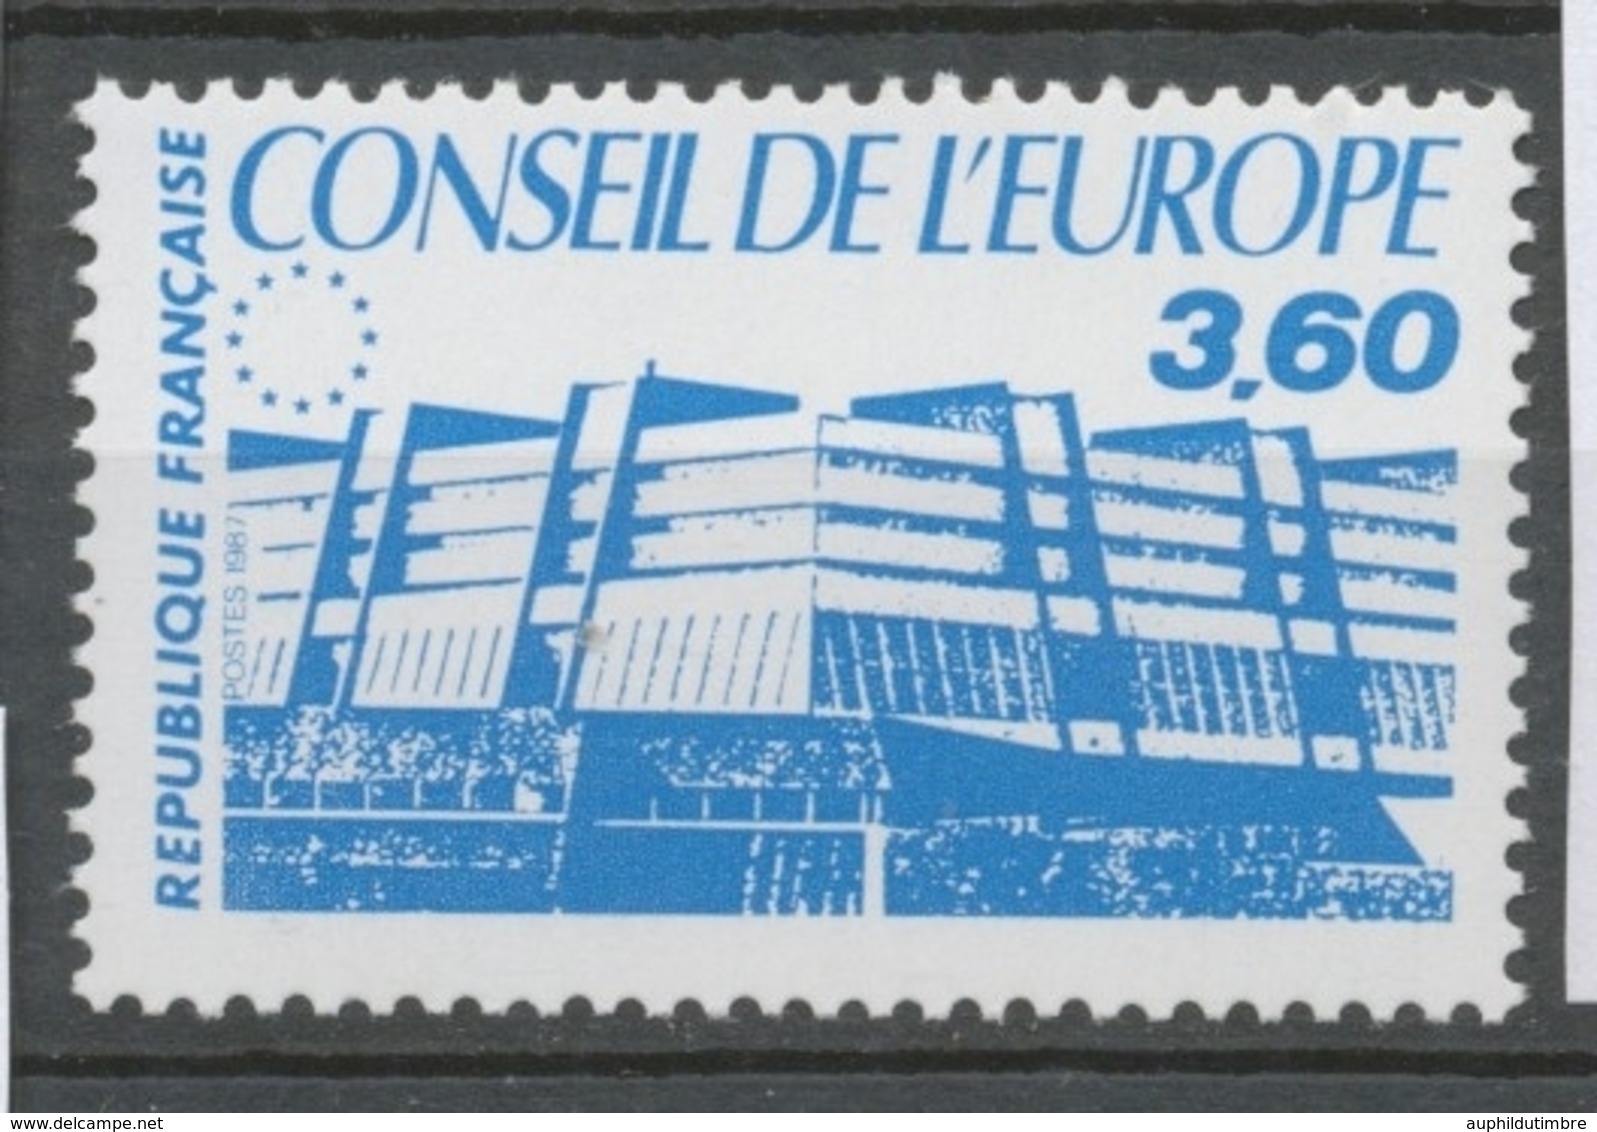 Service N°97 Conseil De L' Europe. 3f.60 Bleu ZS97 - Ongebruikt